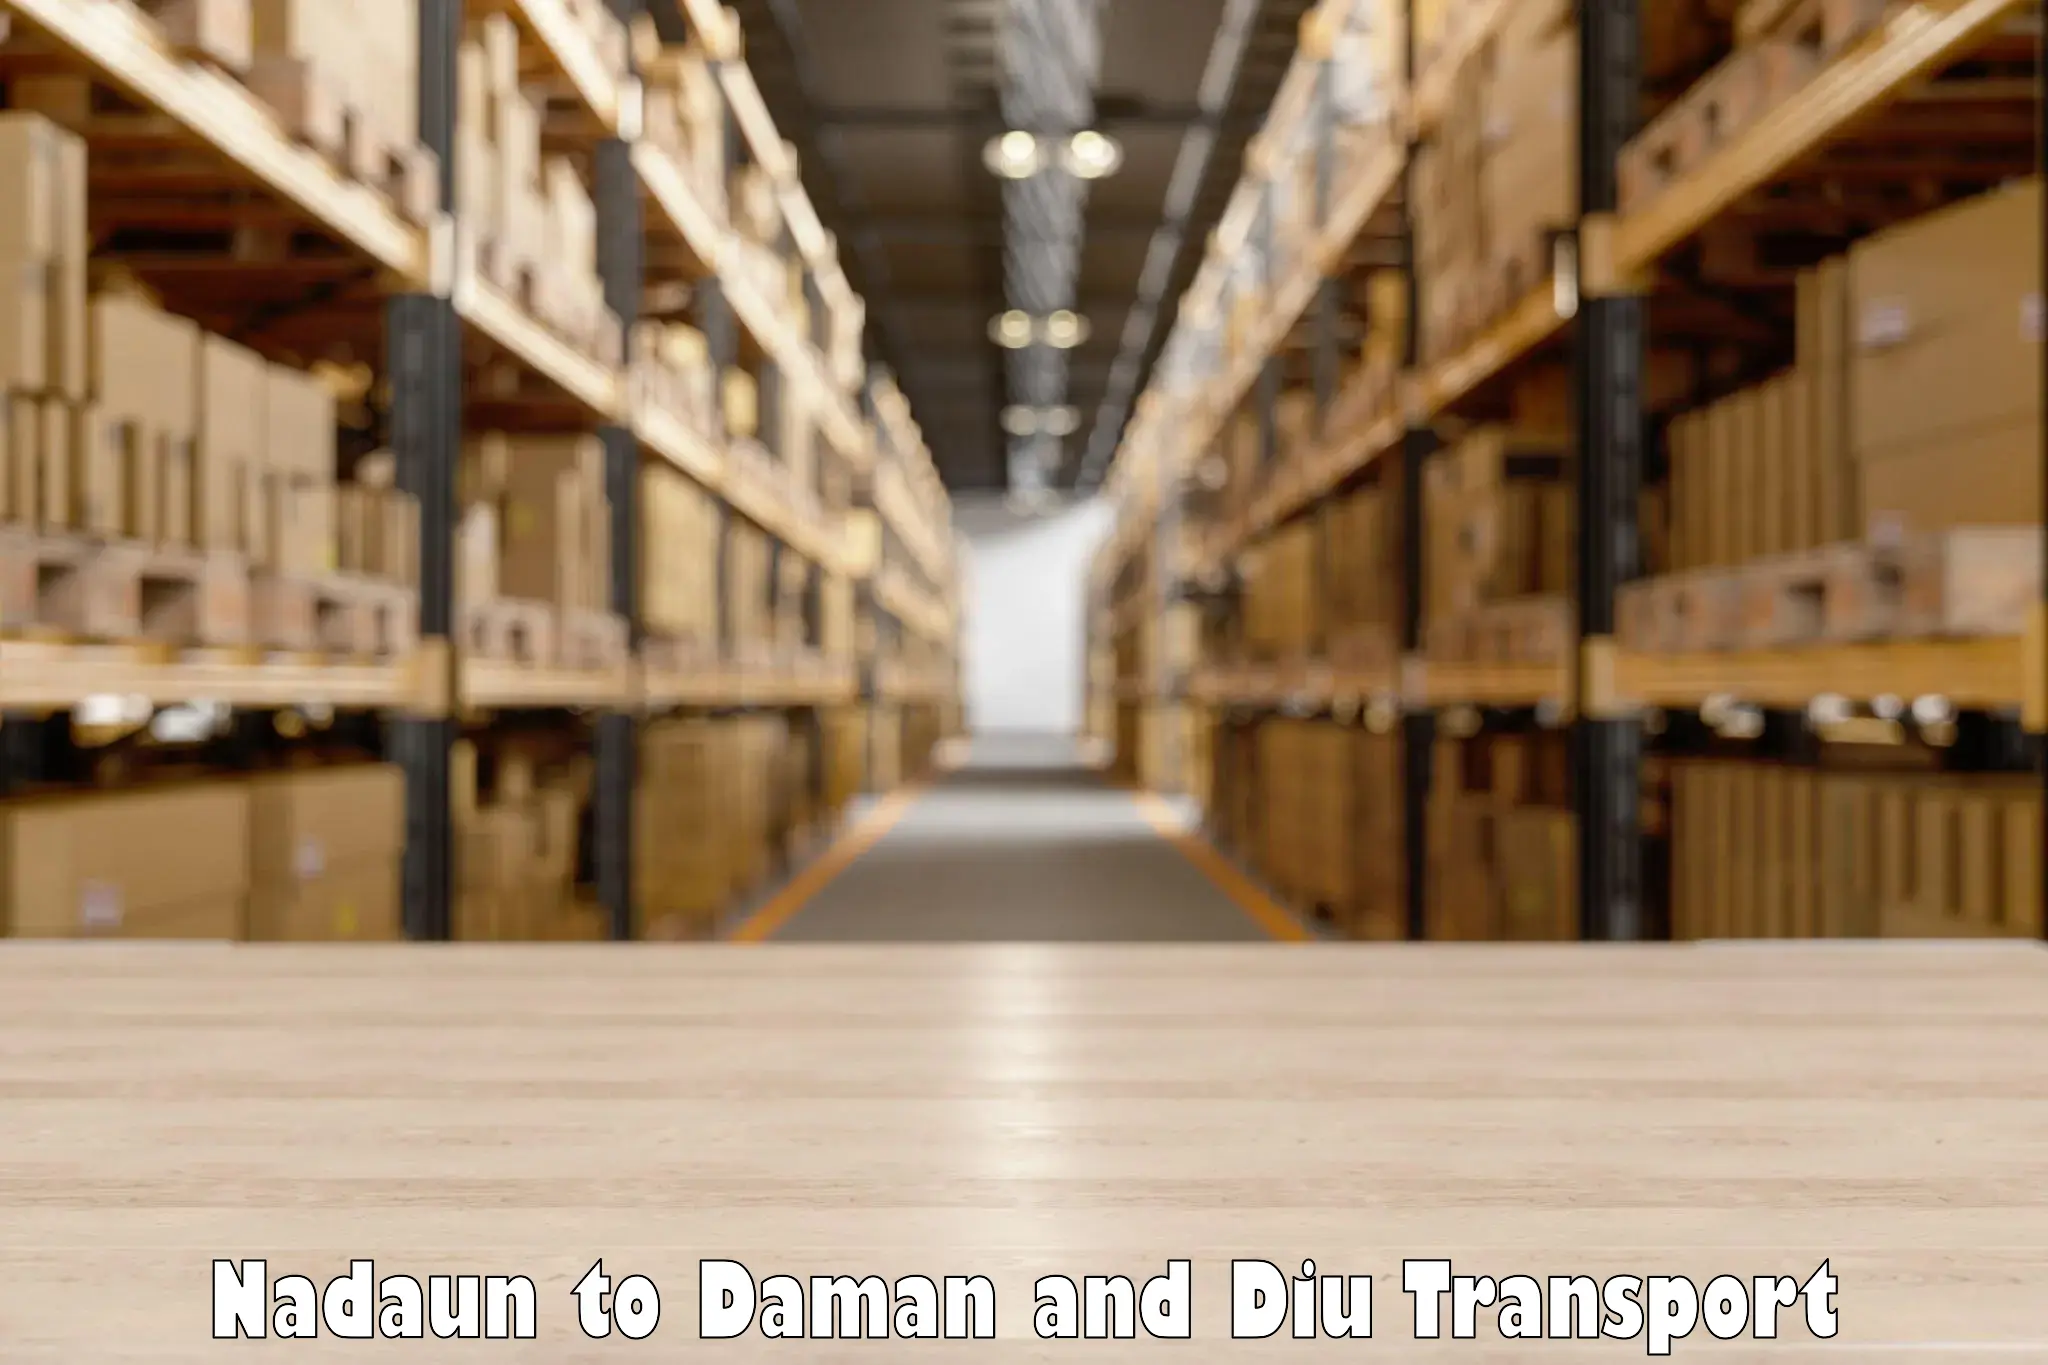 Online transport service Nadaun to Daman and Diu